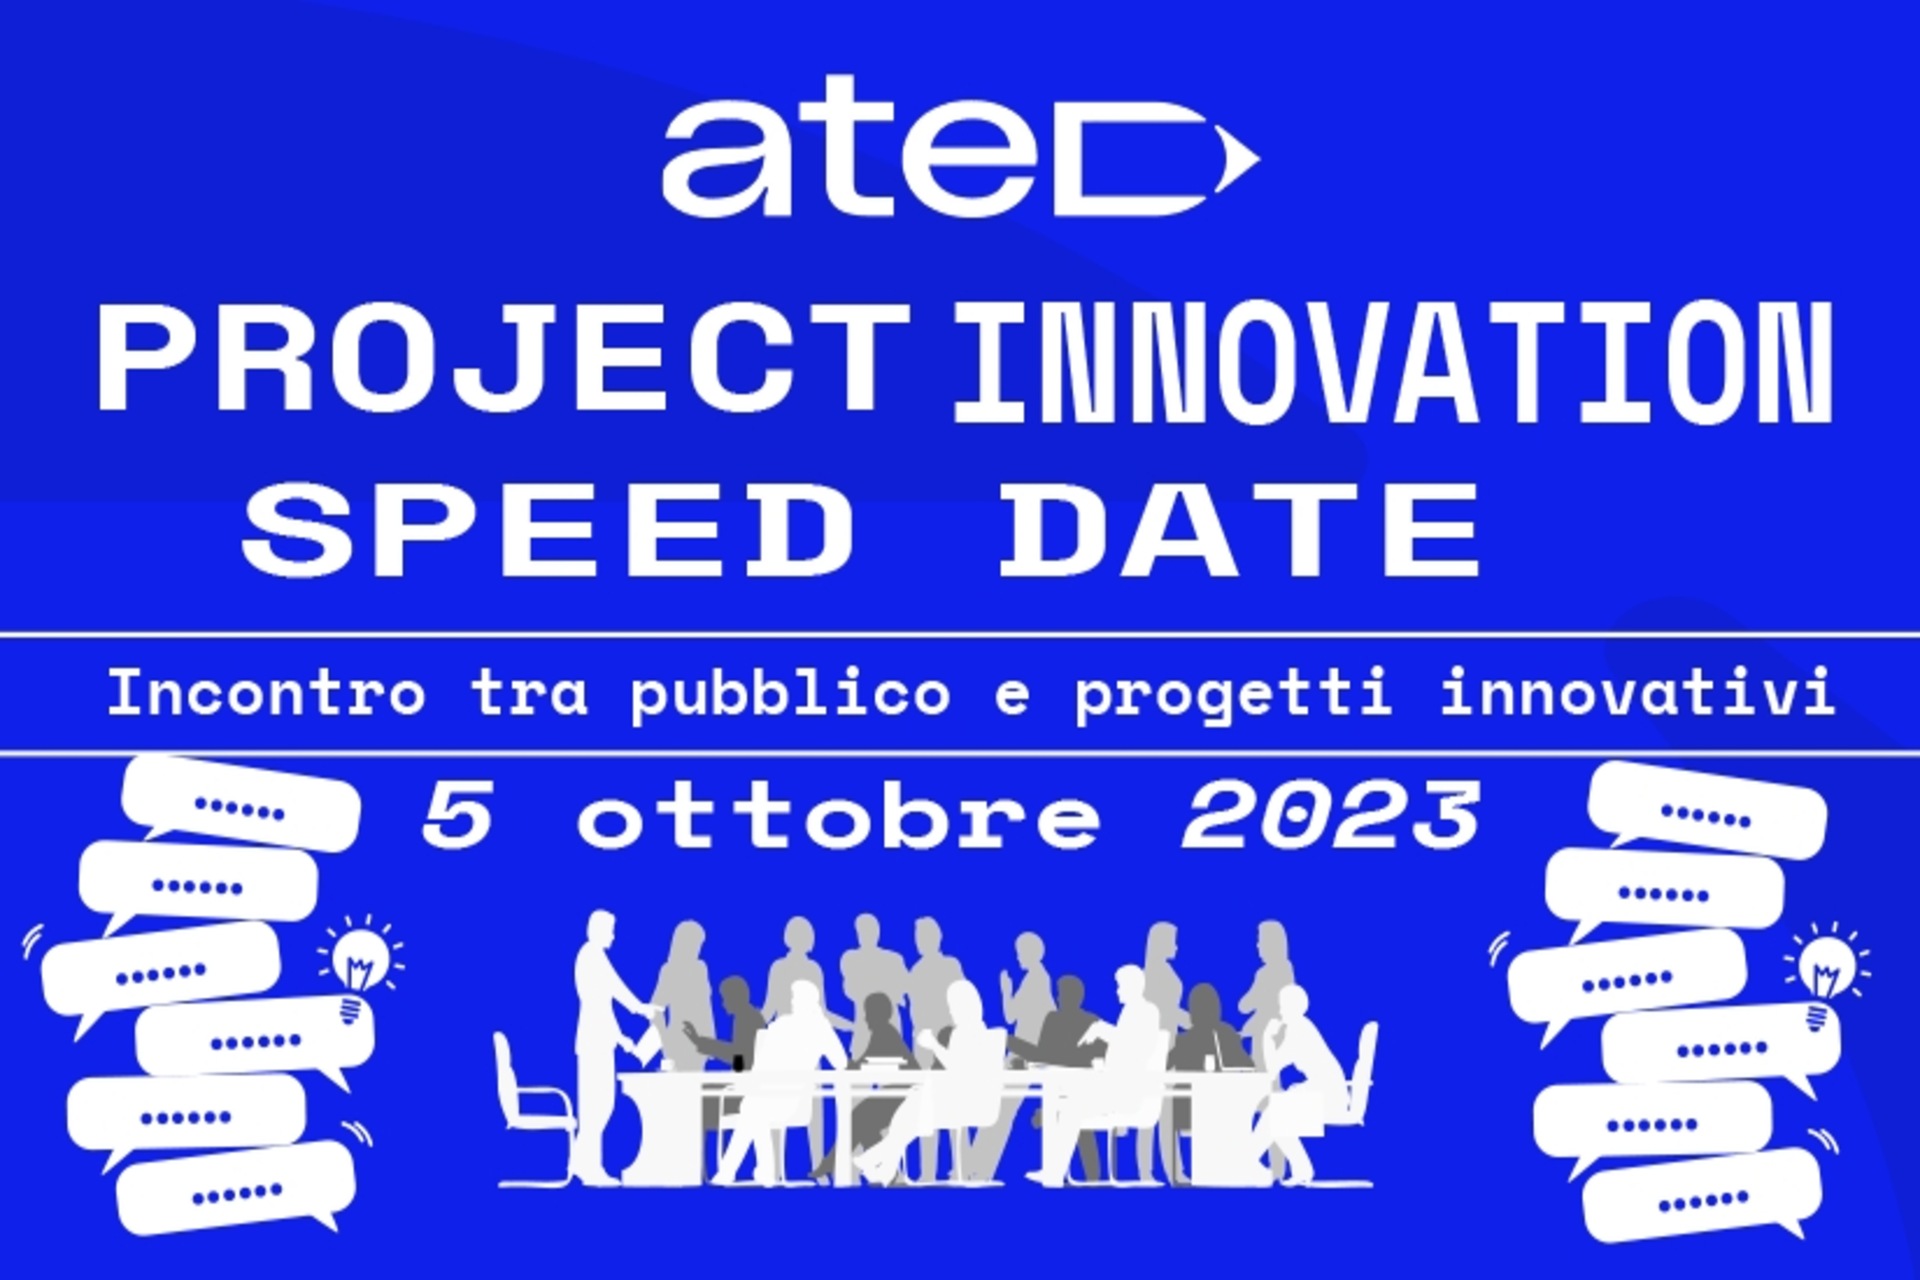 ATED Project Innovation Speed ​​​​Date: plakat og nøglevisuel